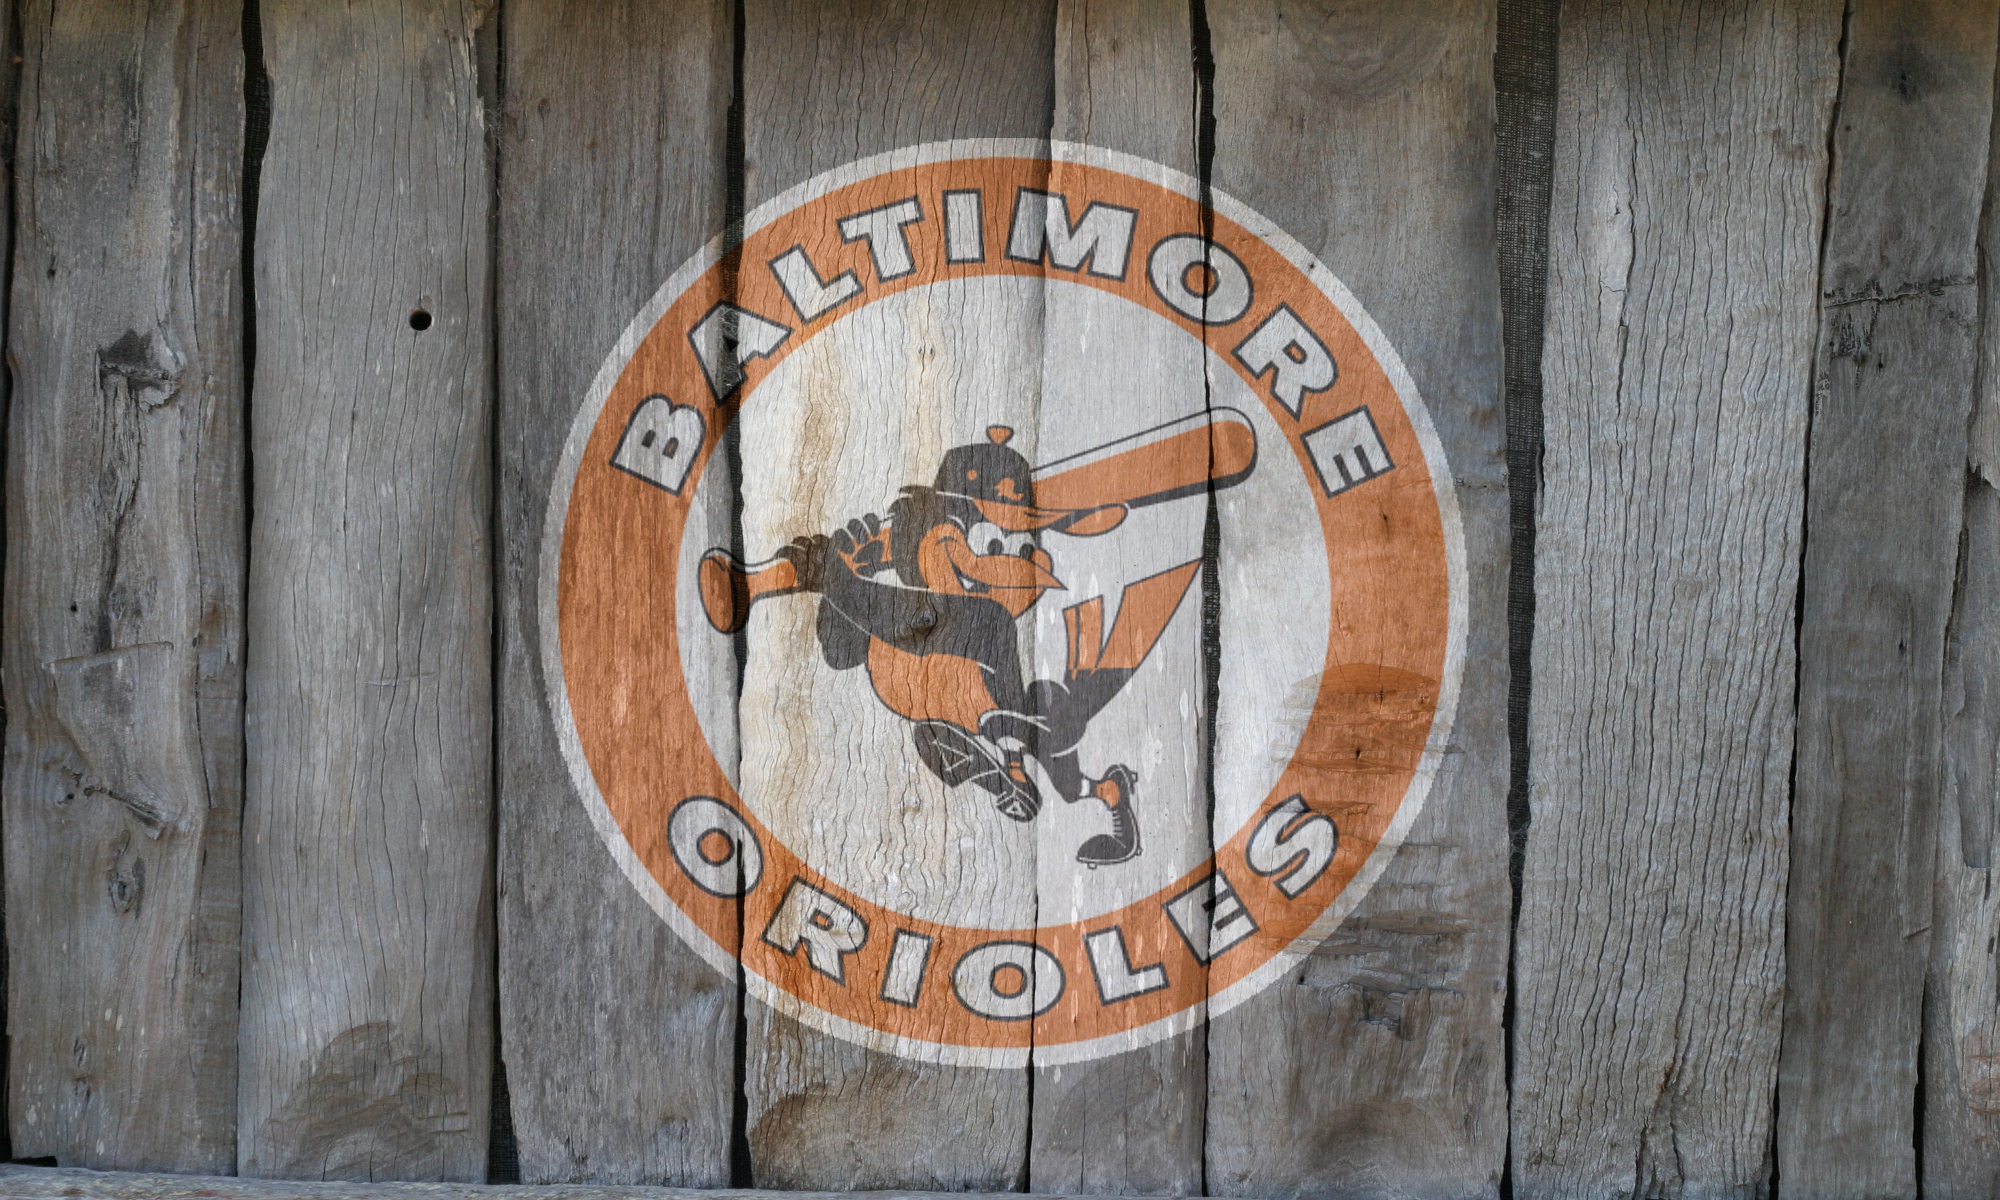 Baltimore Orioles Logo Wallpaper